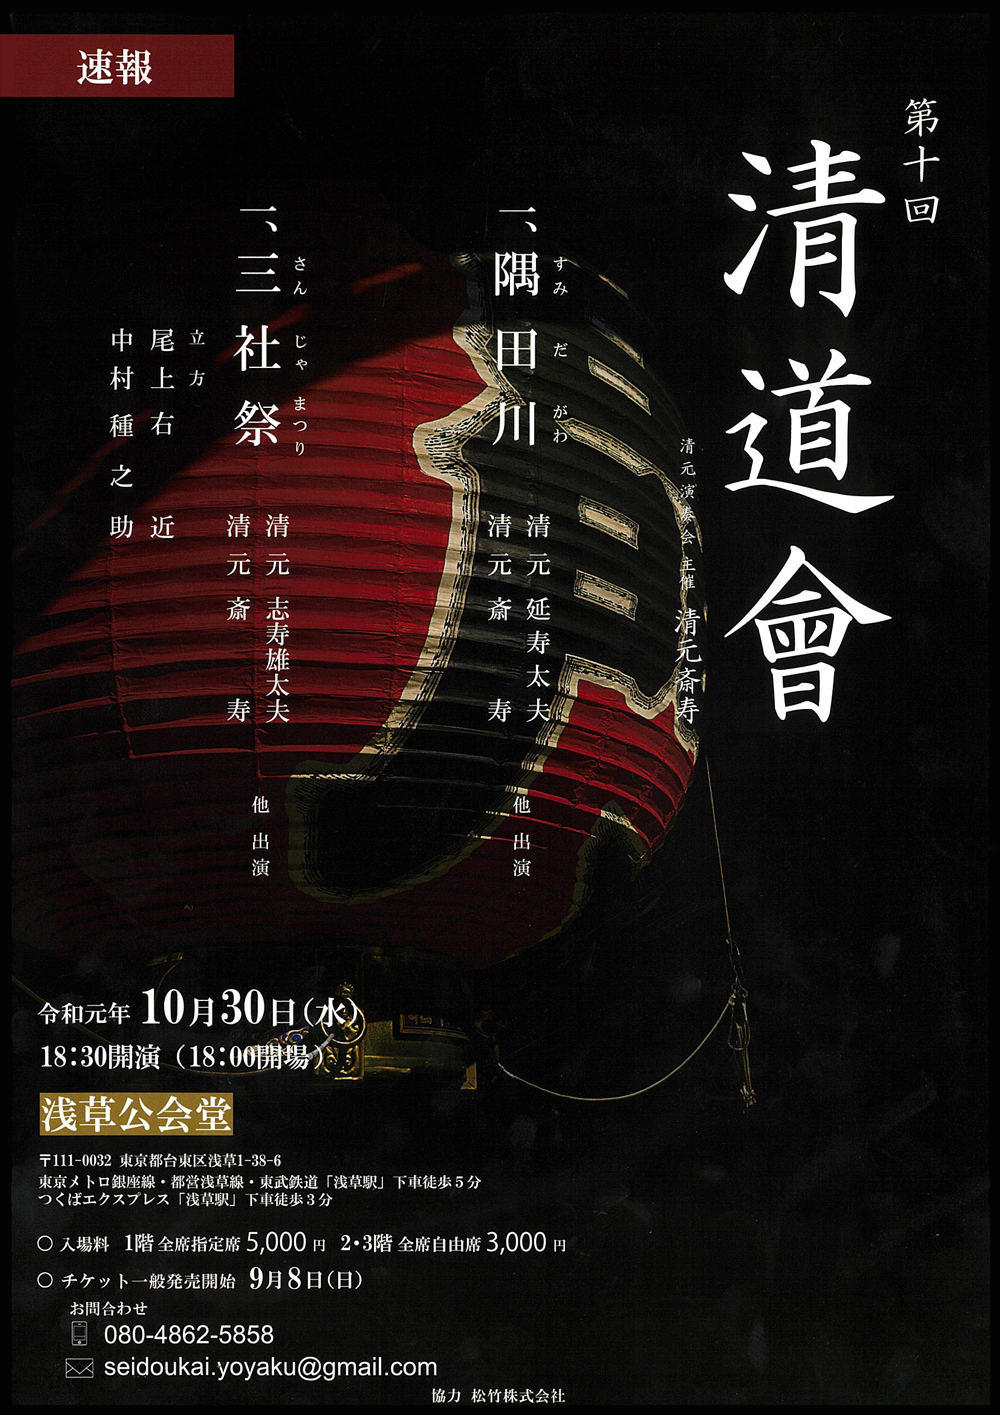 右近、種之助出演、清元斎寿自主公演「清道會」のお知らせ